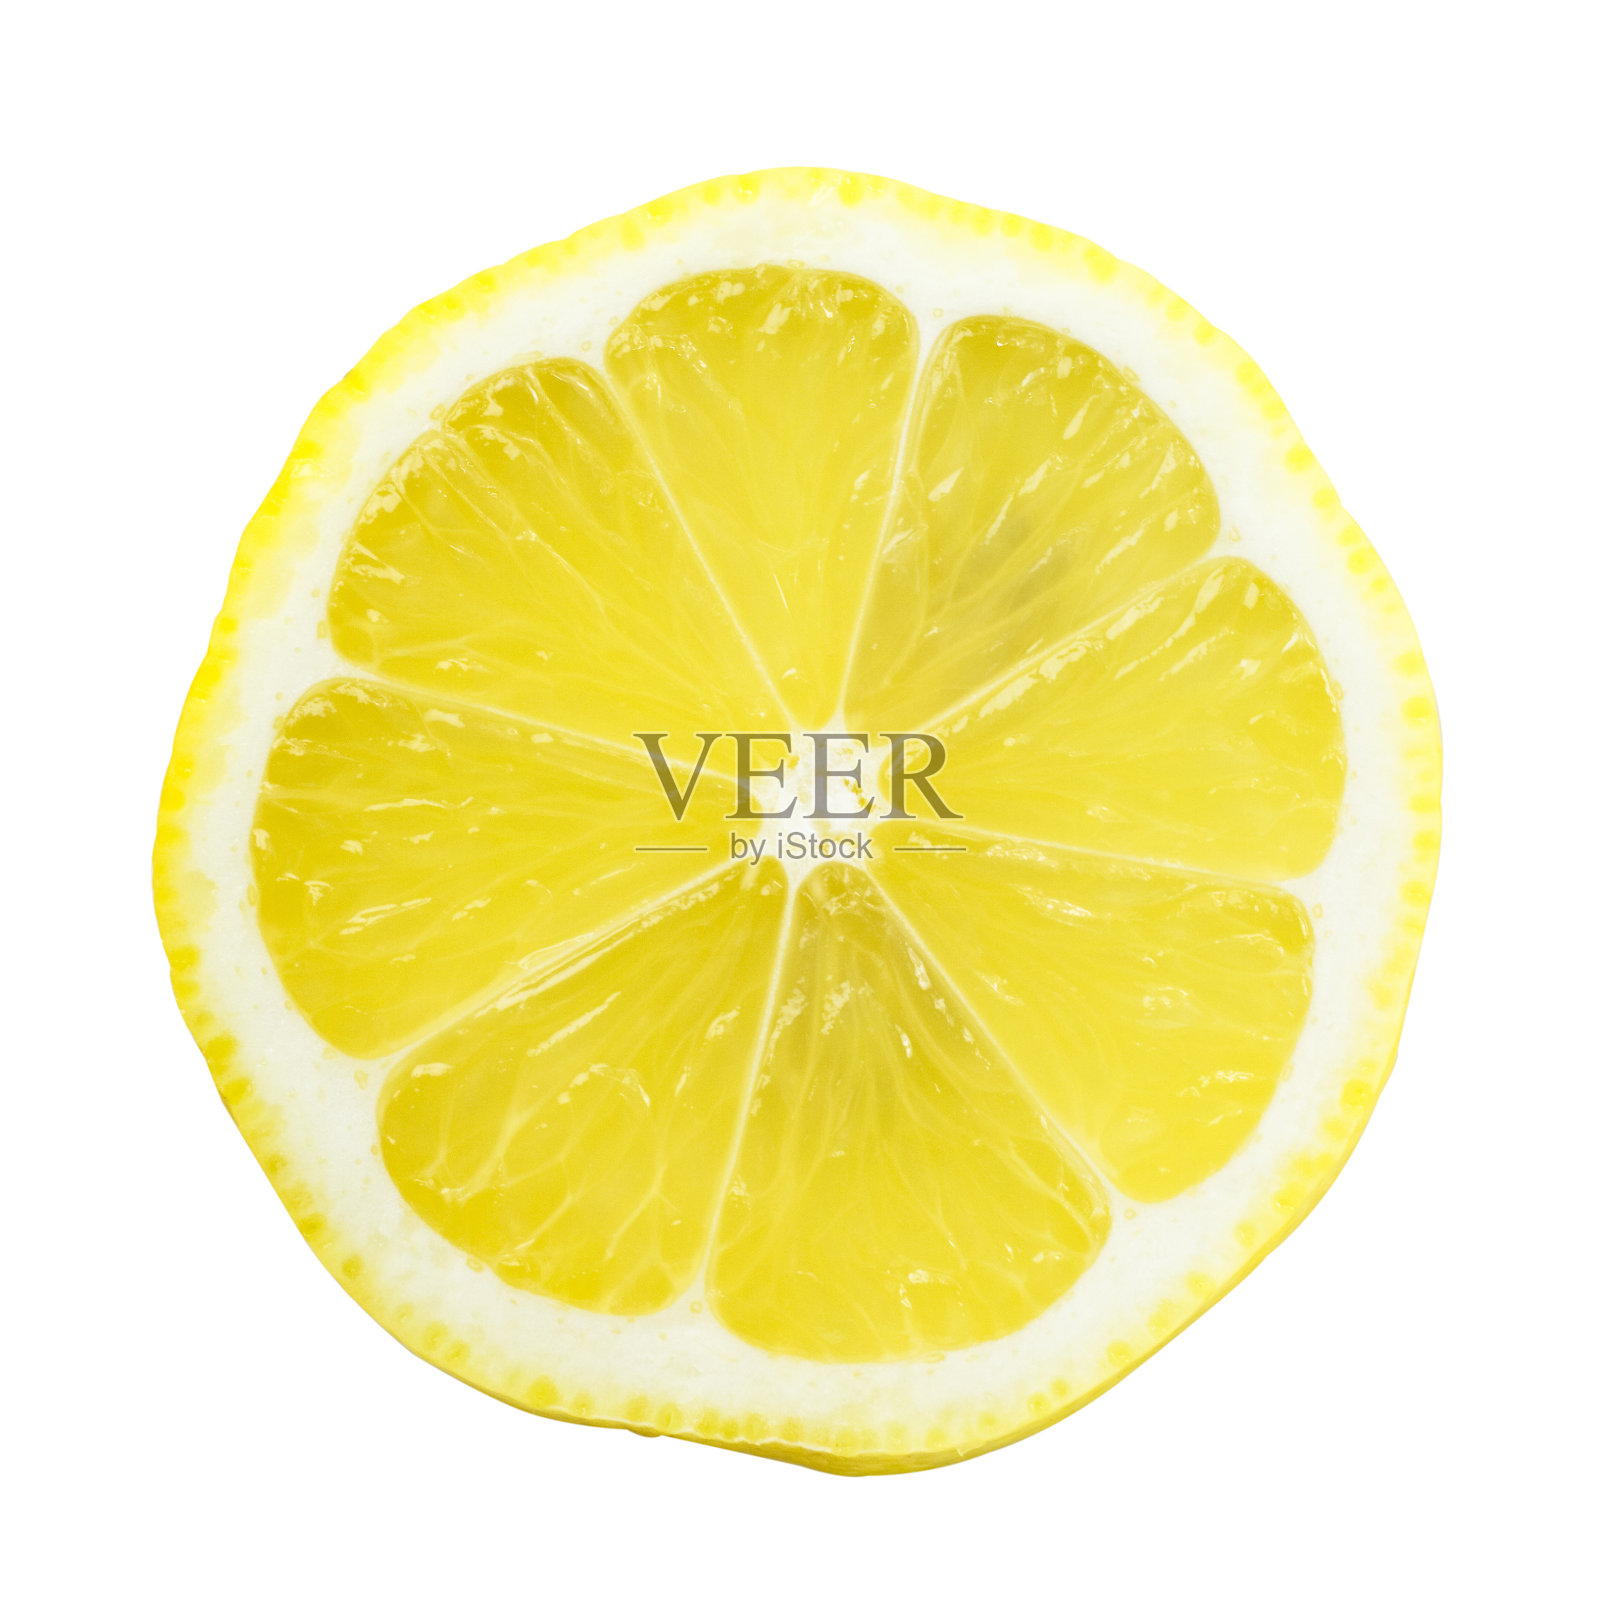 白色的柠檬片配上亮黄色照片摄影图片